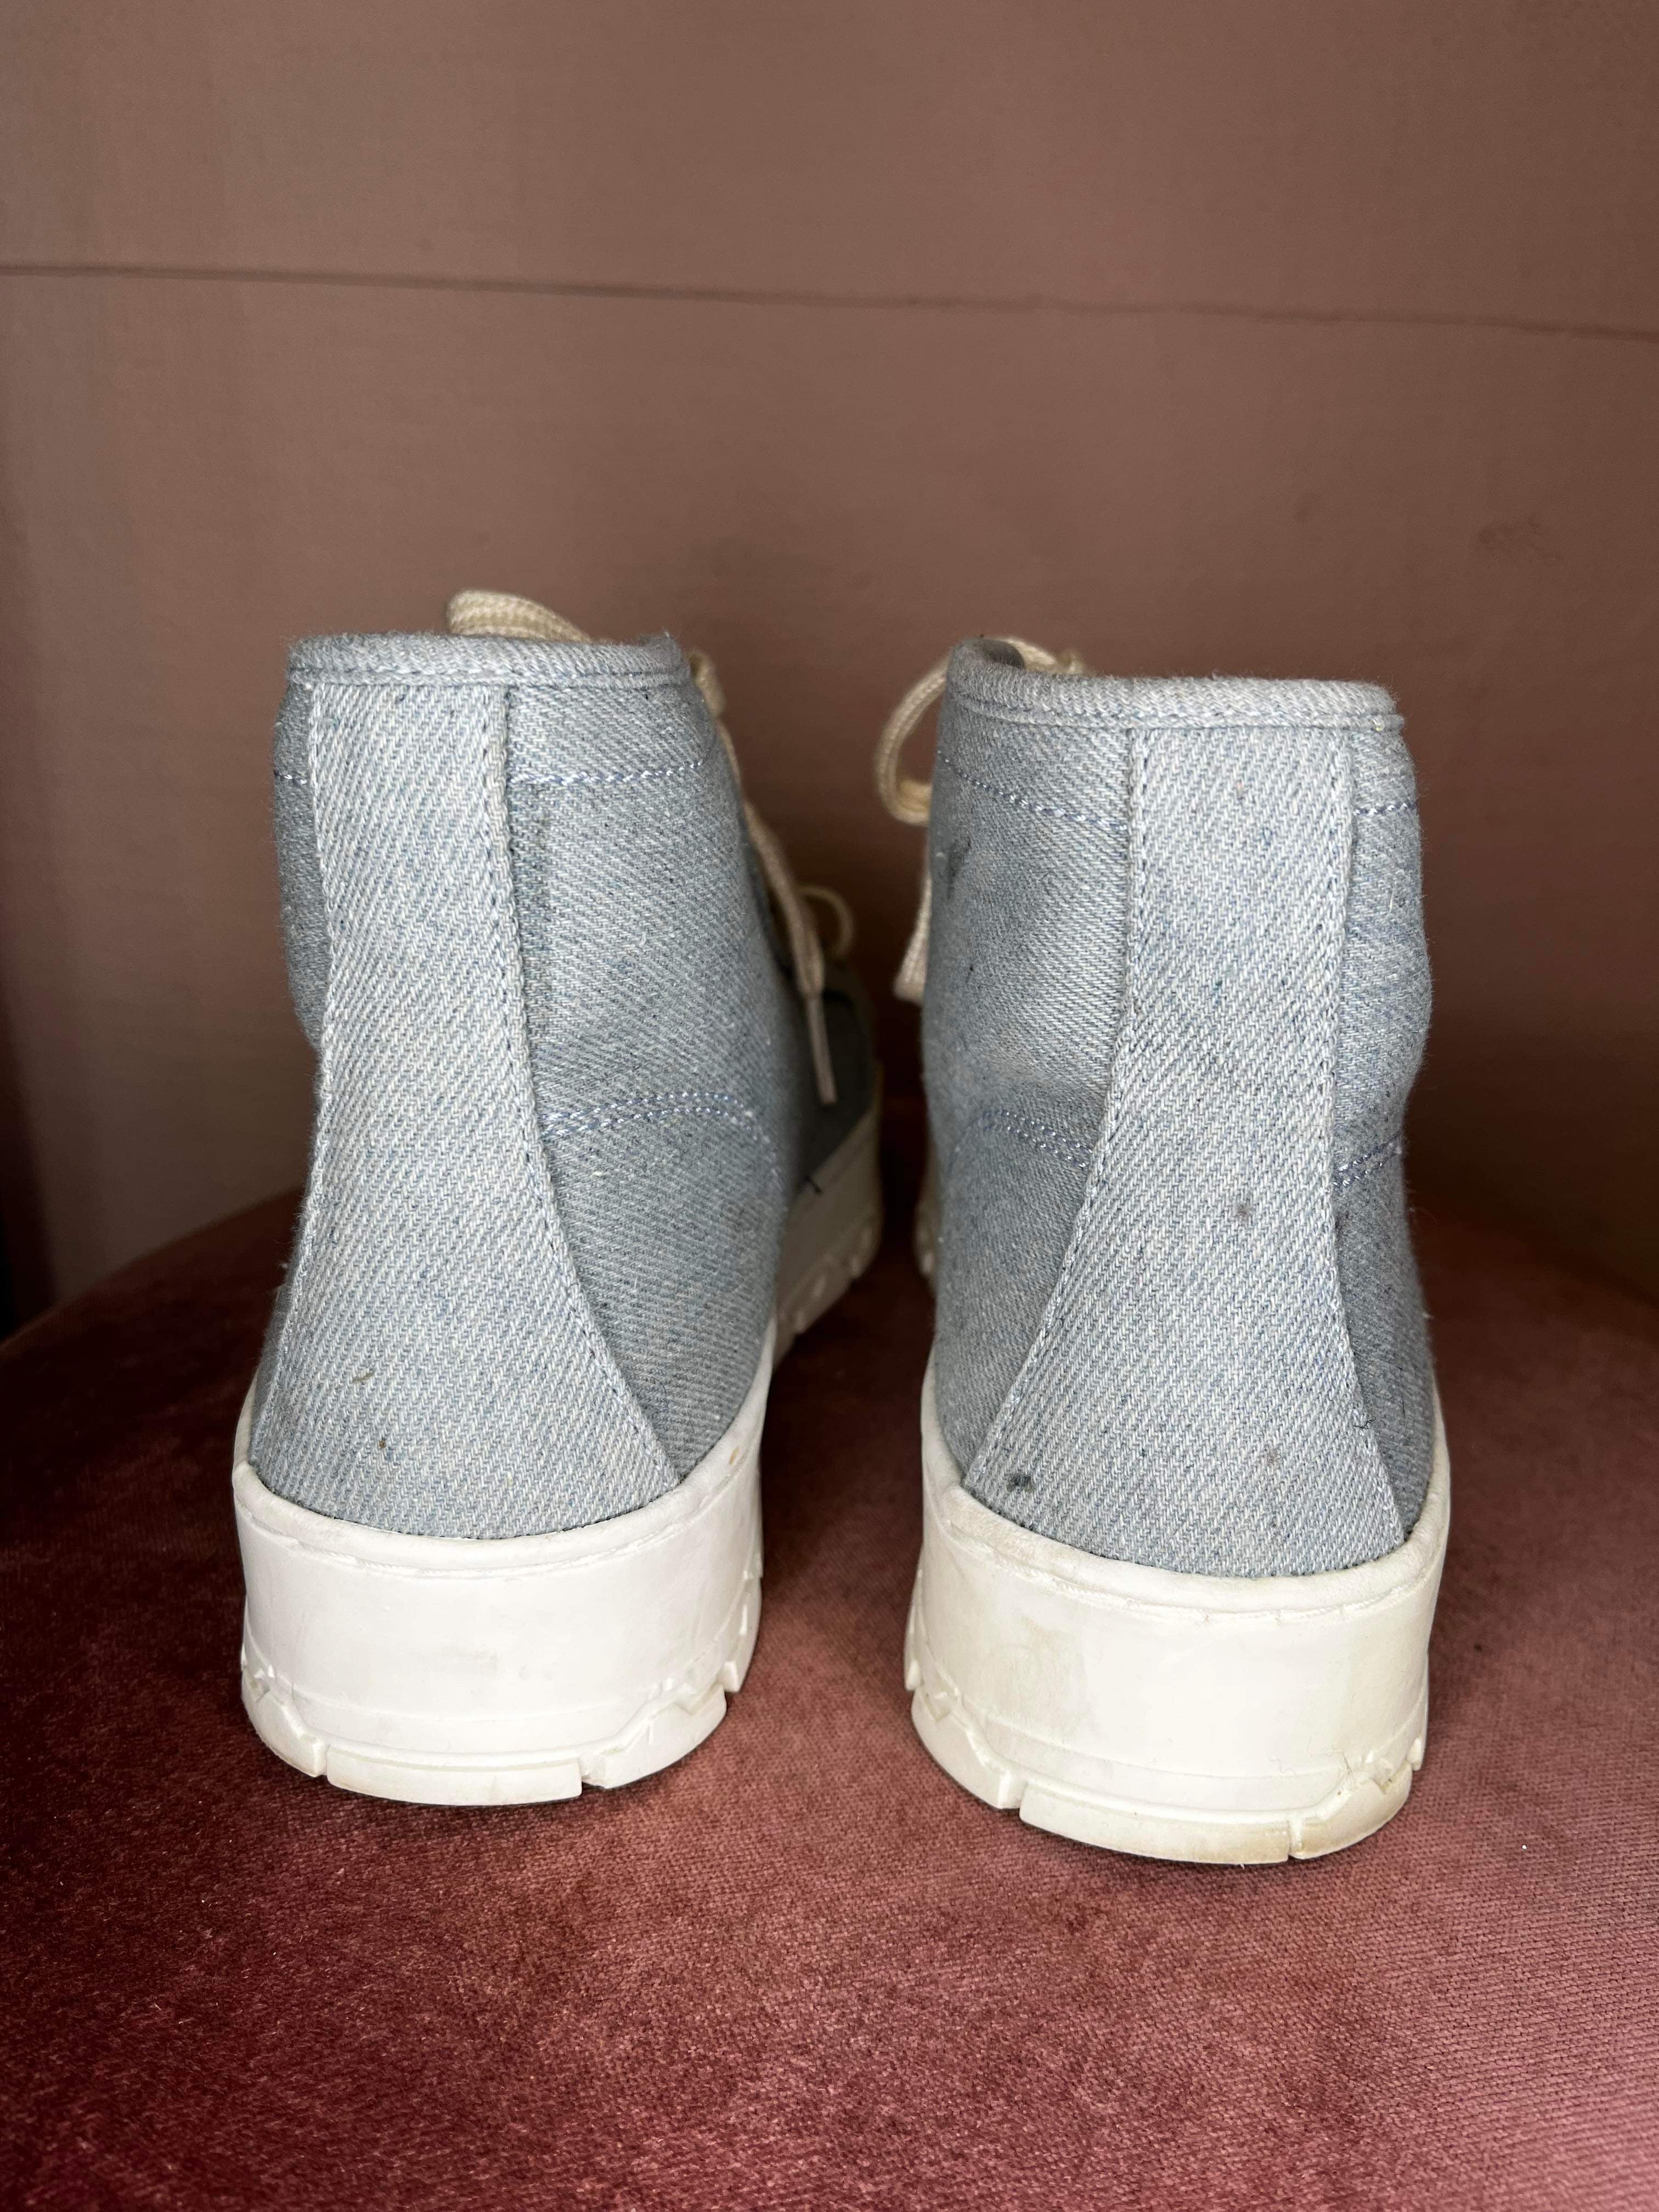 Zara - Sneakers - Size: 37